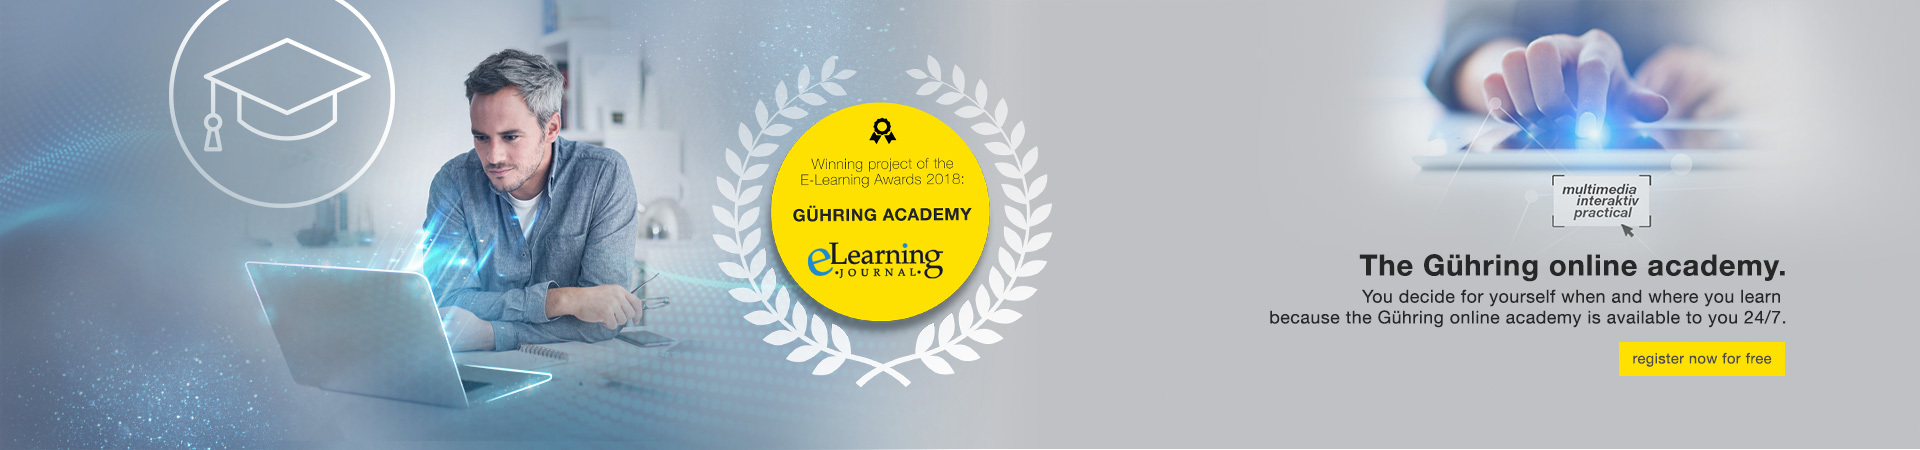 Gühring Academy - über das Thema Fräsen